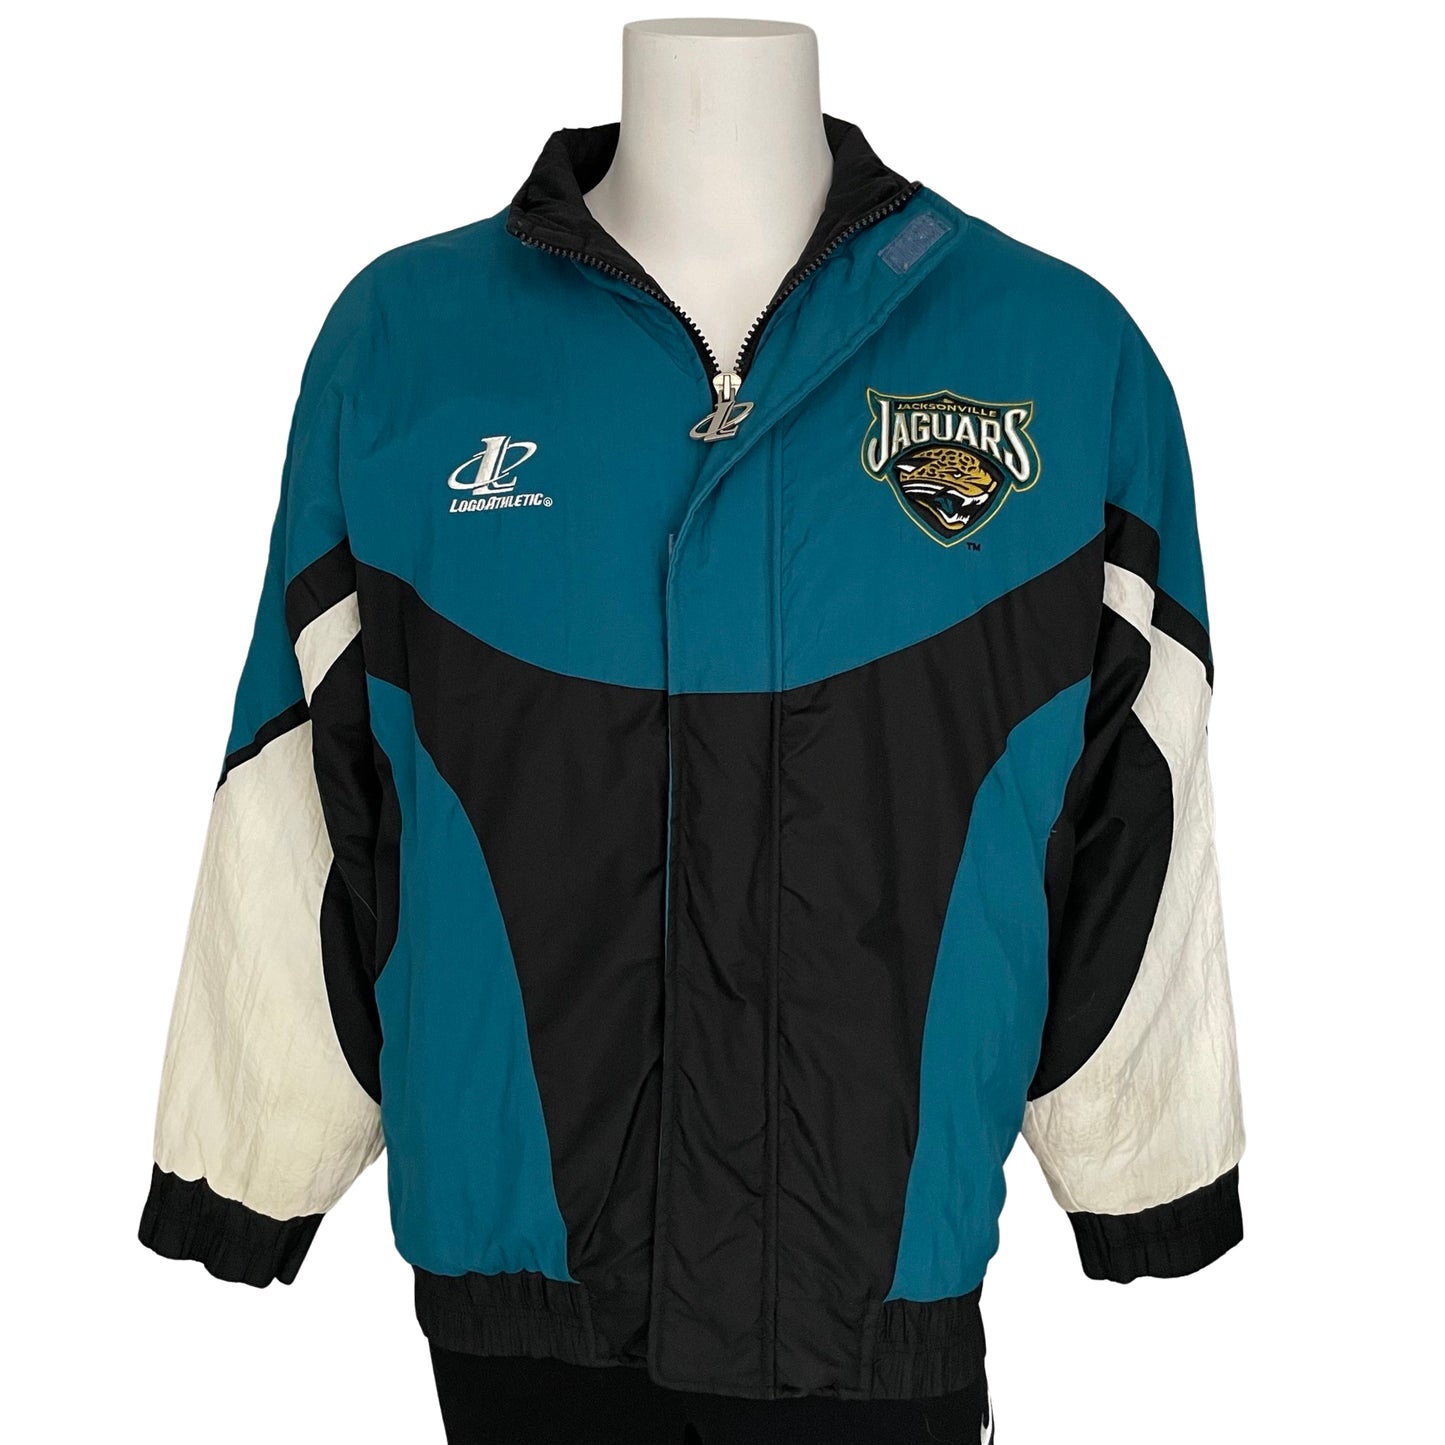 Vintage Jacksonville Jaguars jacket size LARGE